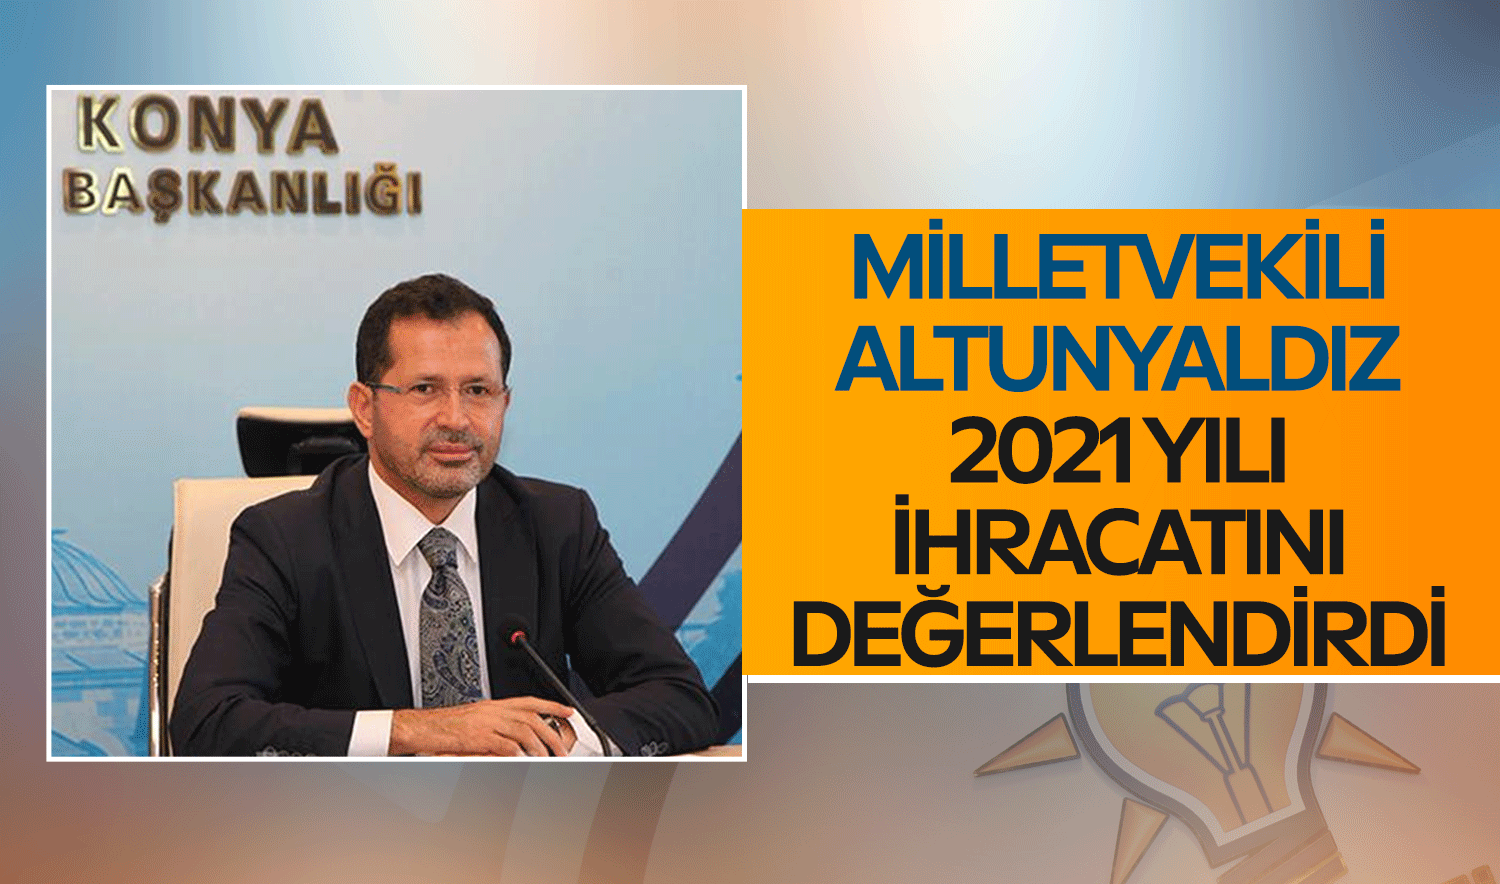 AK Parti Konya Milletvekili Altunyaldız, 2021 yılı ihracatını değerlendirdi